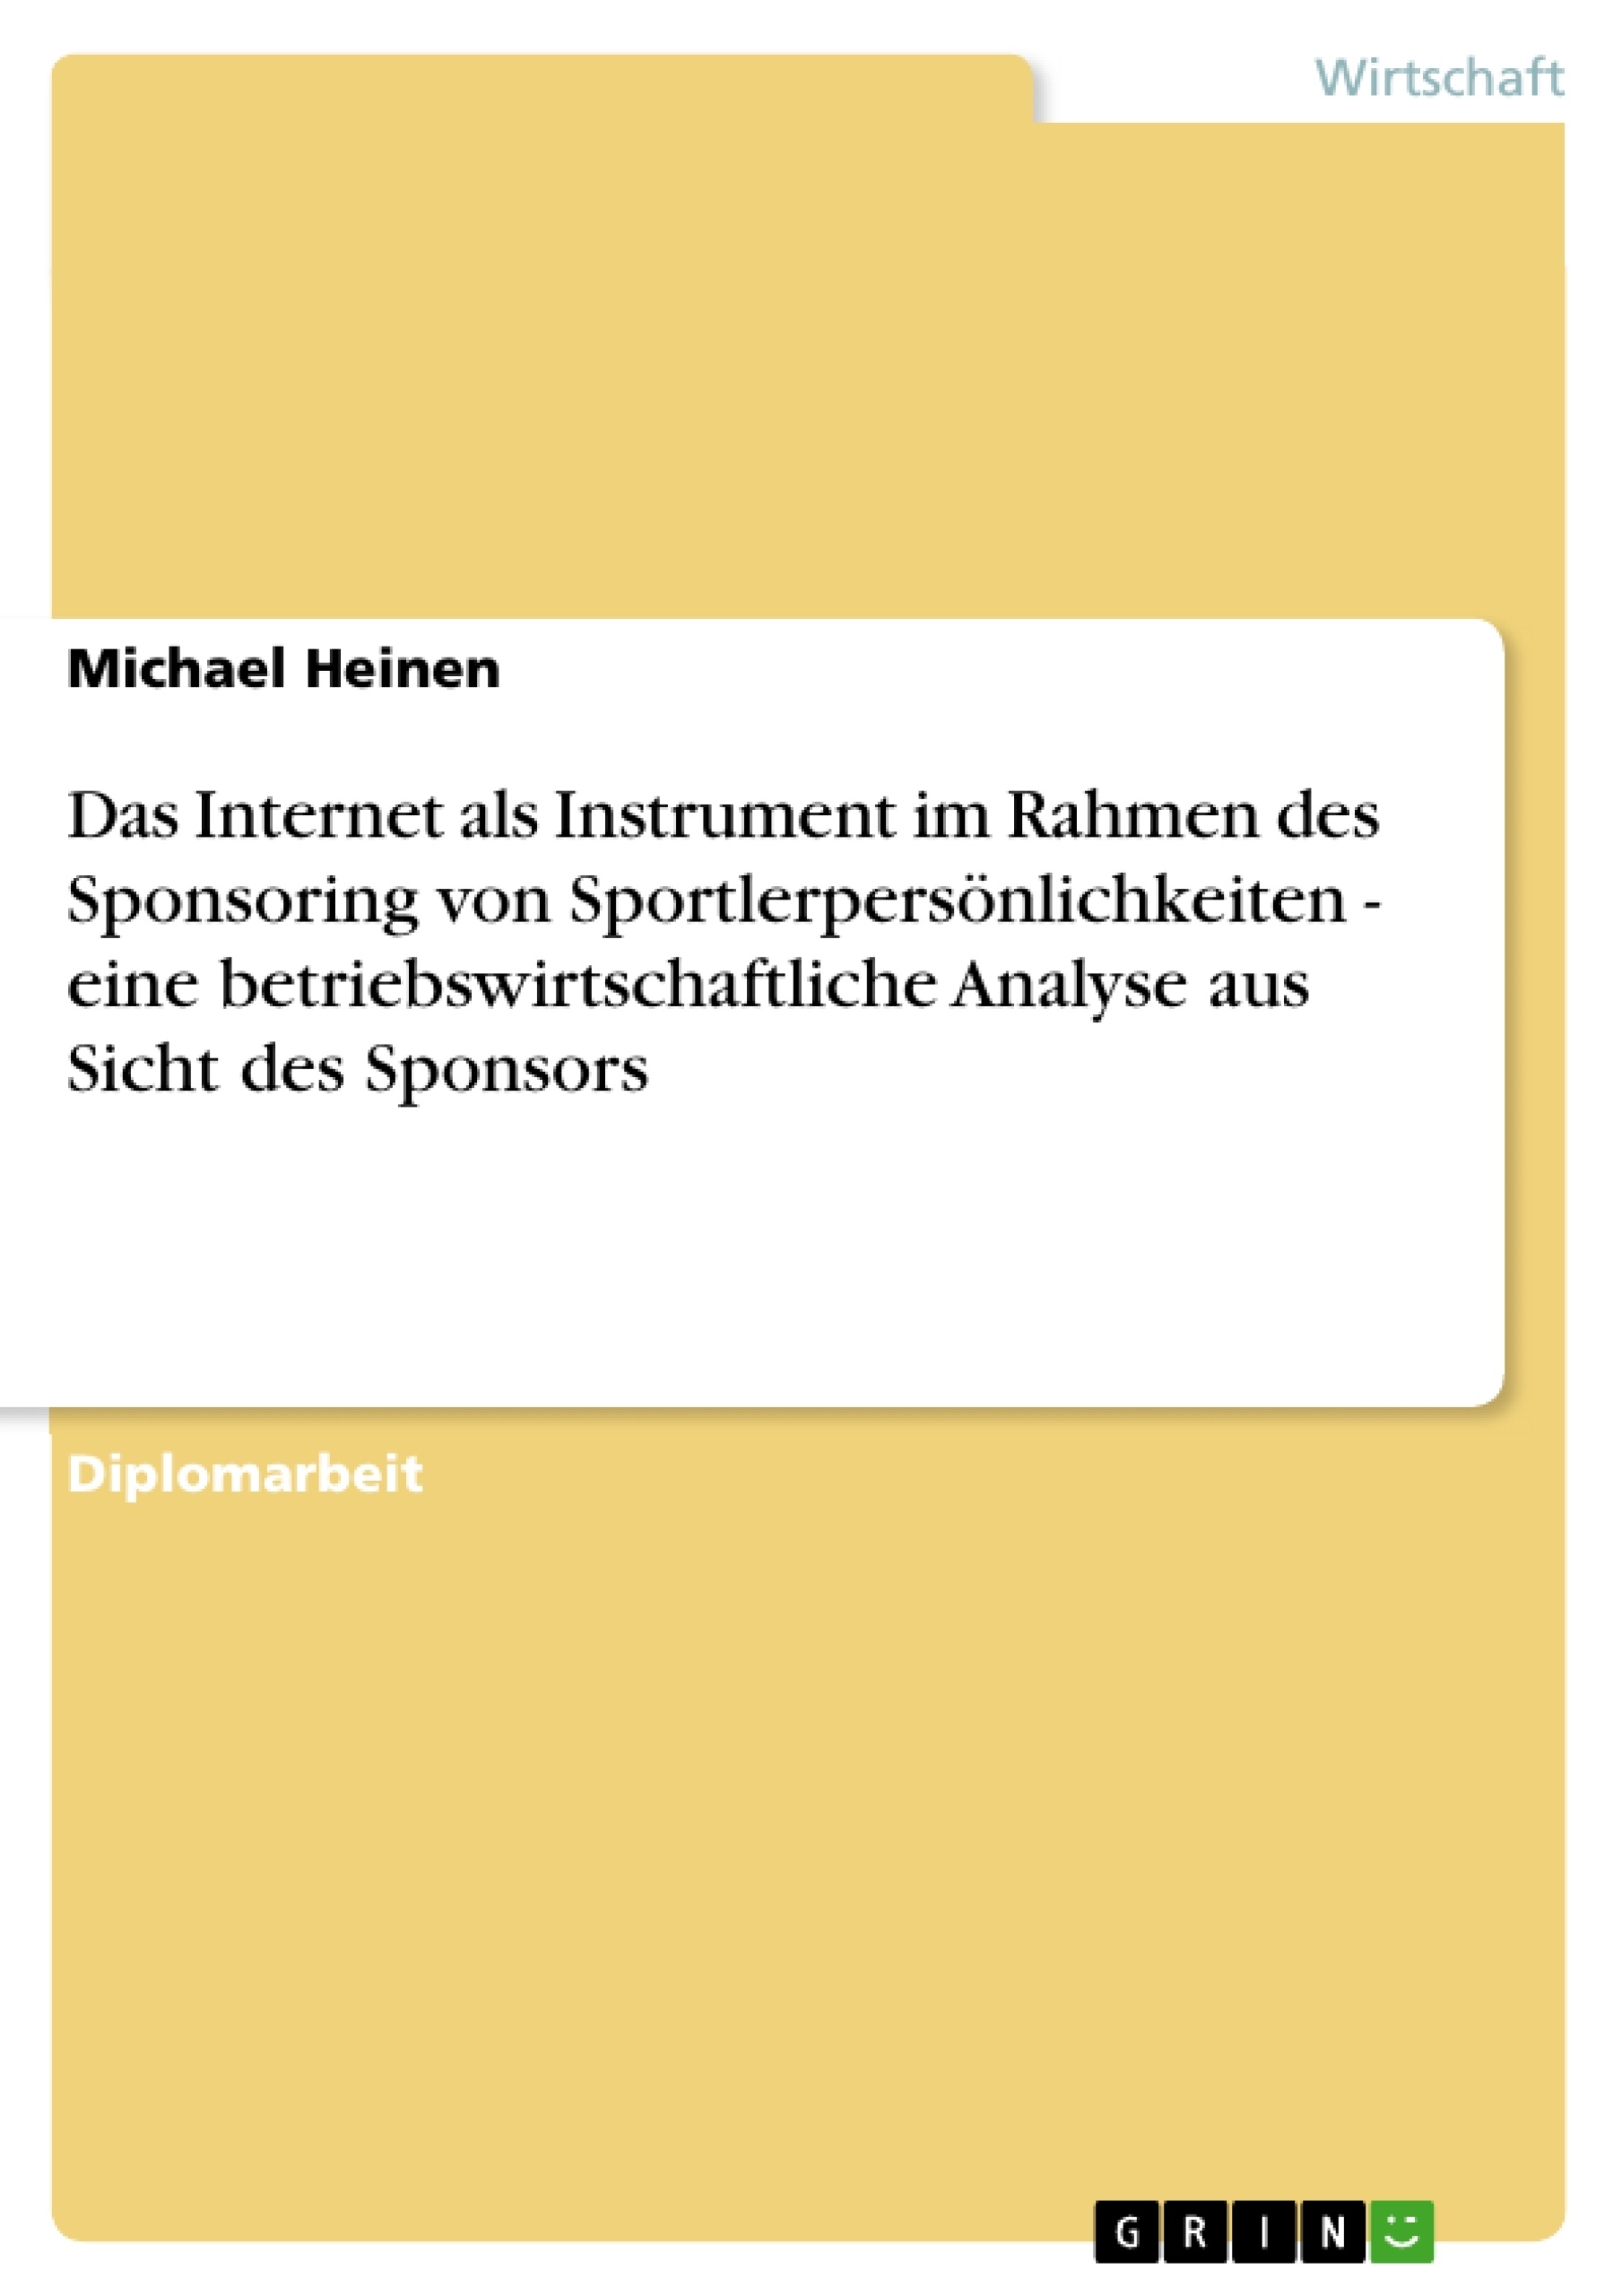 Title: Das Internet als Instrument im Rahmen des Sponsoring von Sportlerpersönlichkeiten - eine betriebswirtschaftliche Analyse aus Sicht des Sponsors